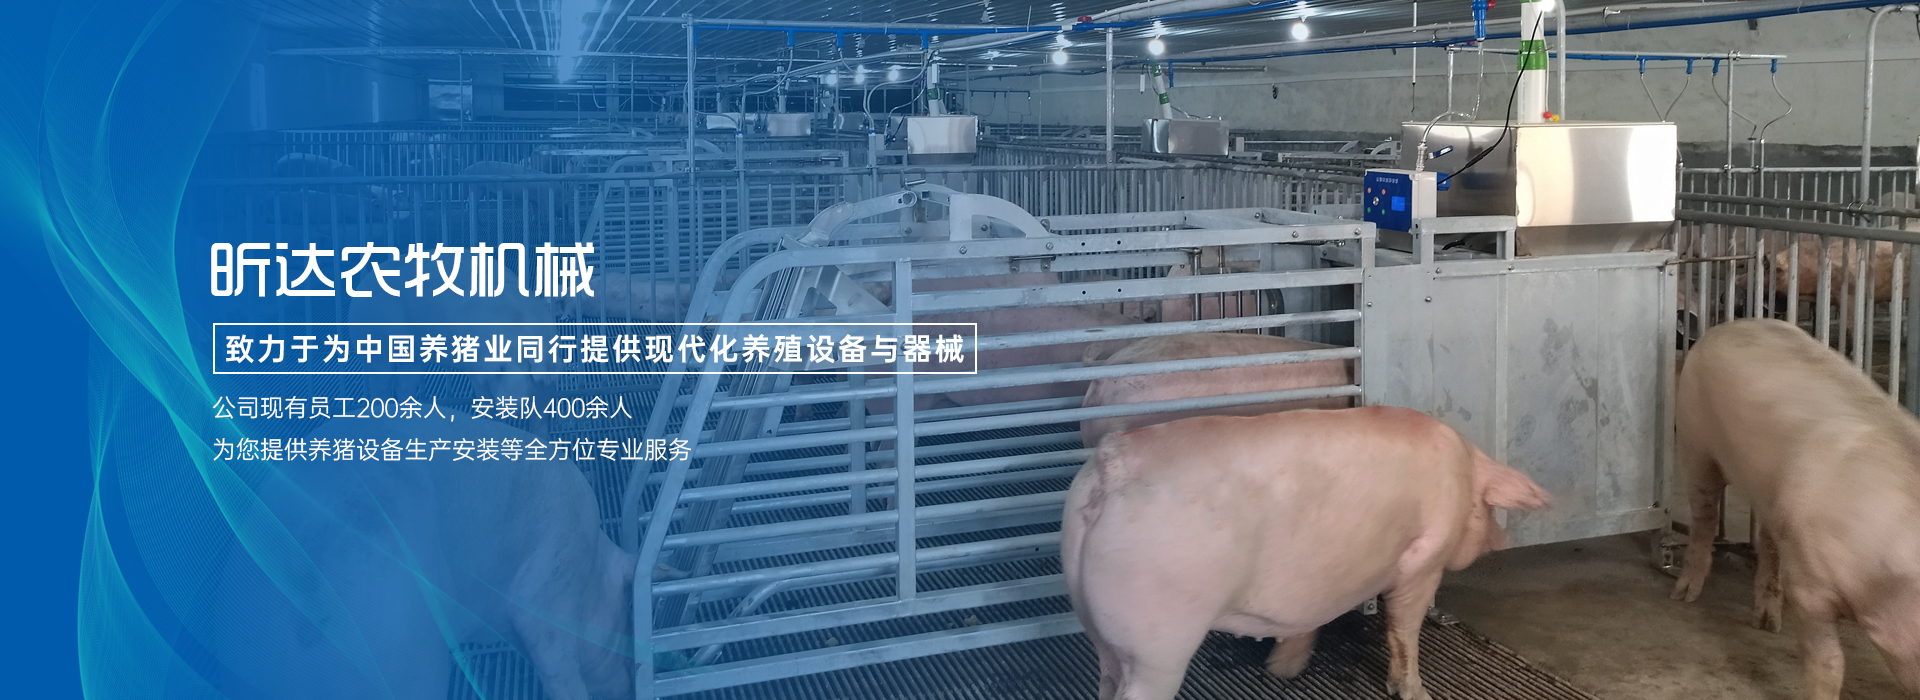 养猪设备,自动化养猪设备,猪场自动化料线